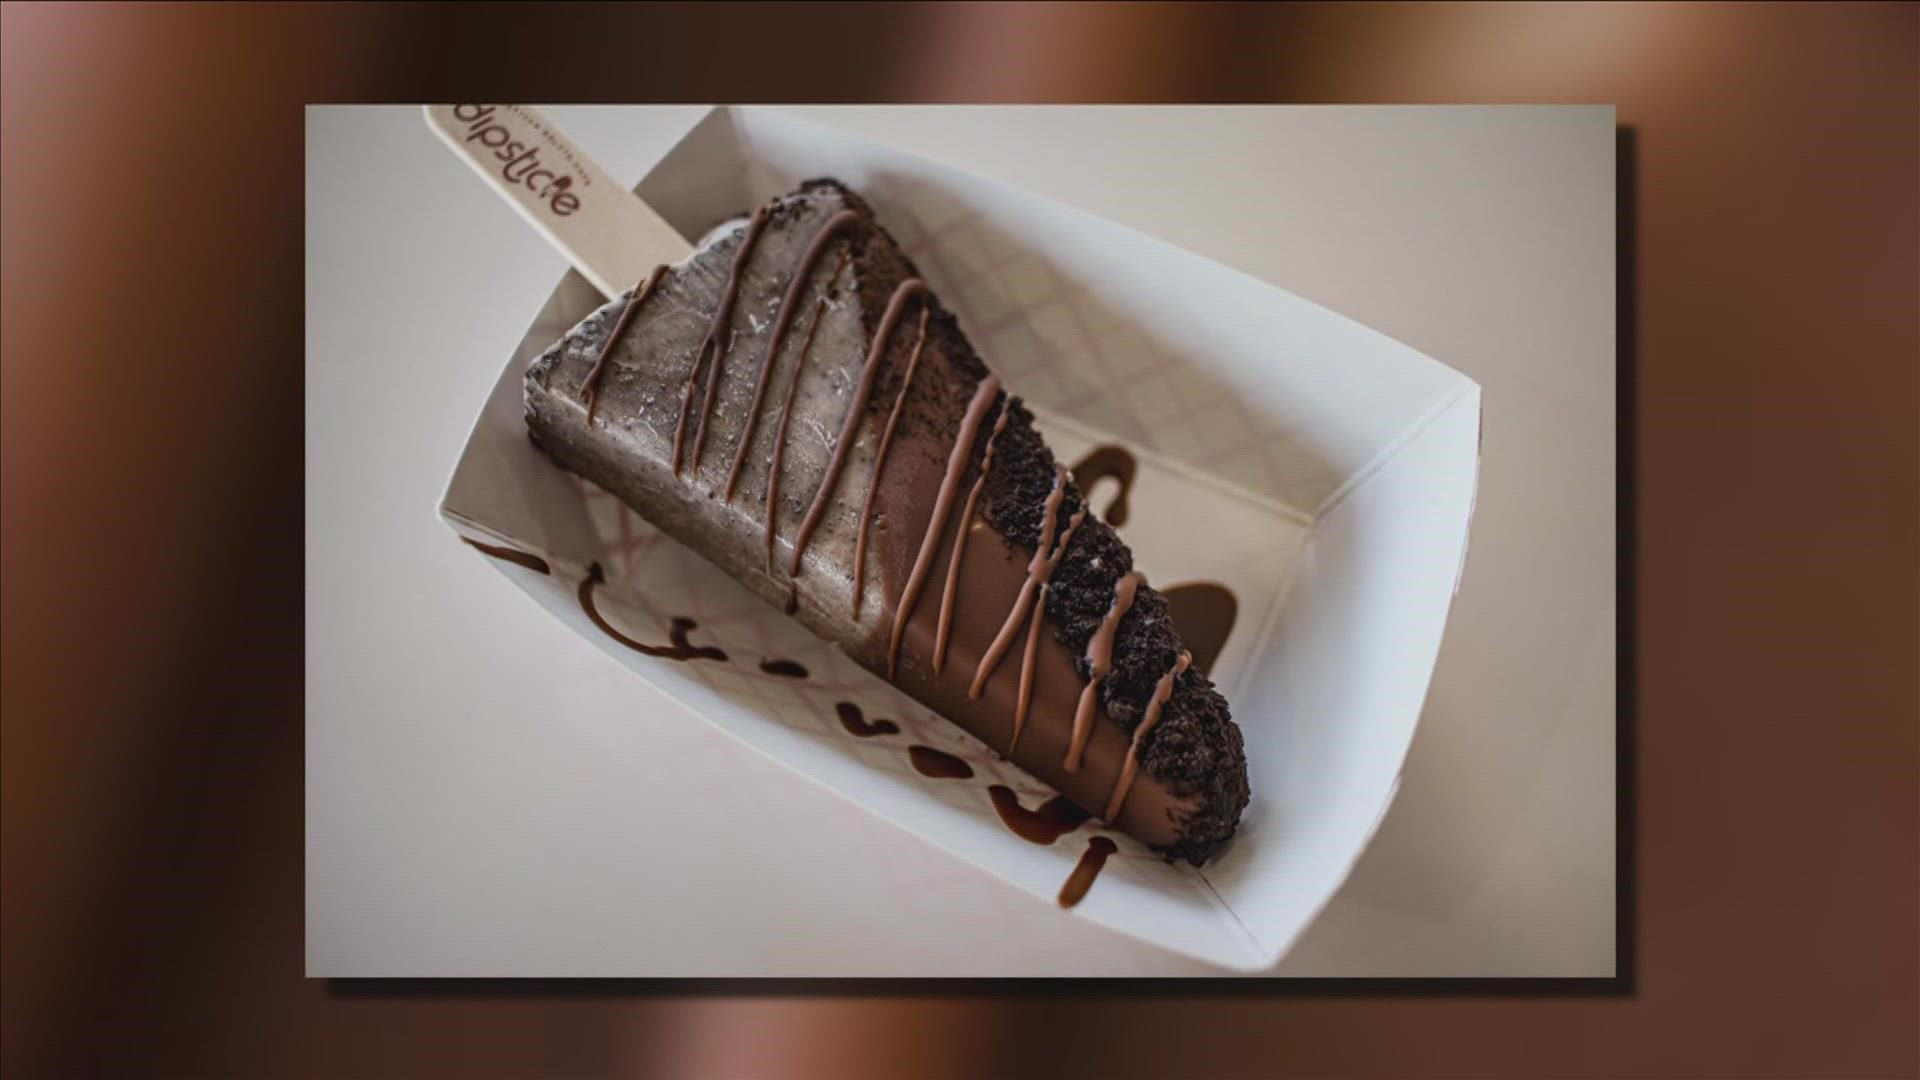 Dipsticle located in Cordova, is an Italian Gelato on a stick ice-cream shop.